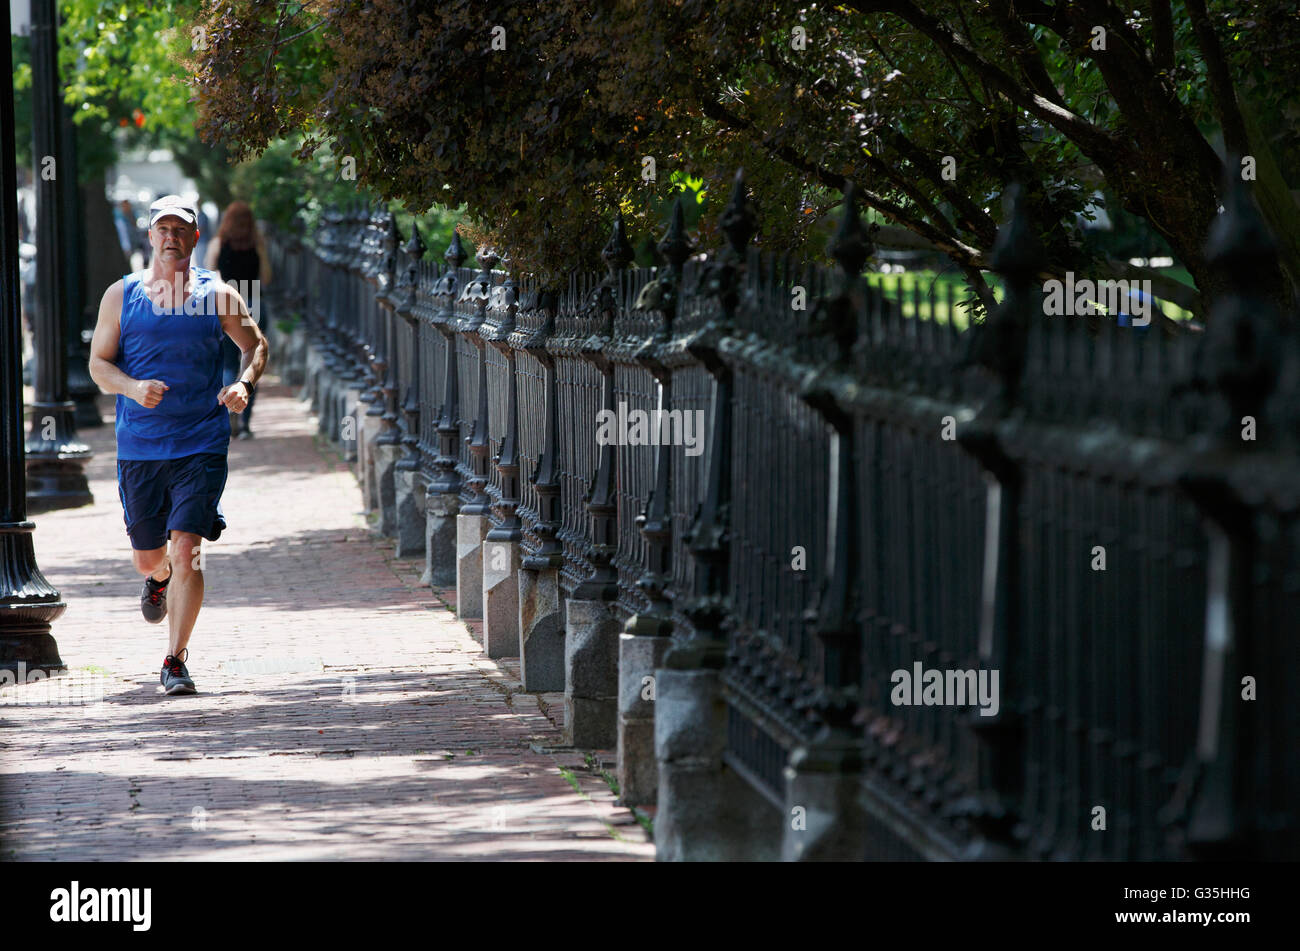 Uomo di jogging sul marciapiede accanto al giardino pubblico, Boston, Massachusetts, STATI UNITI D'AMERICA Foto Stock